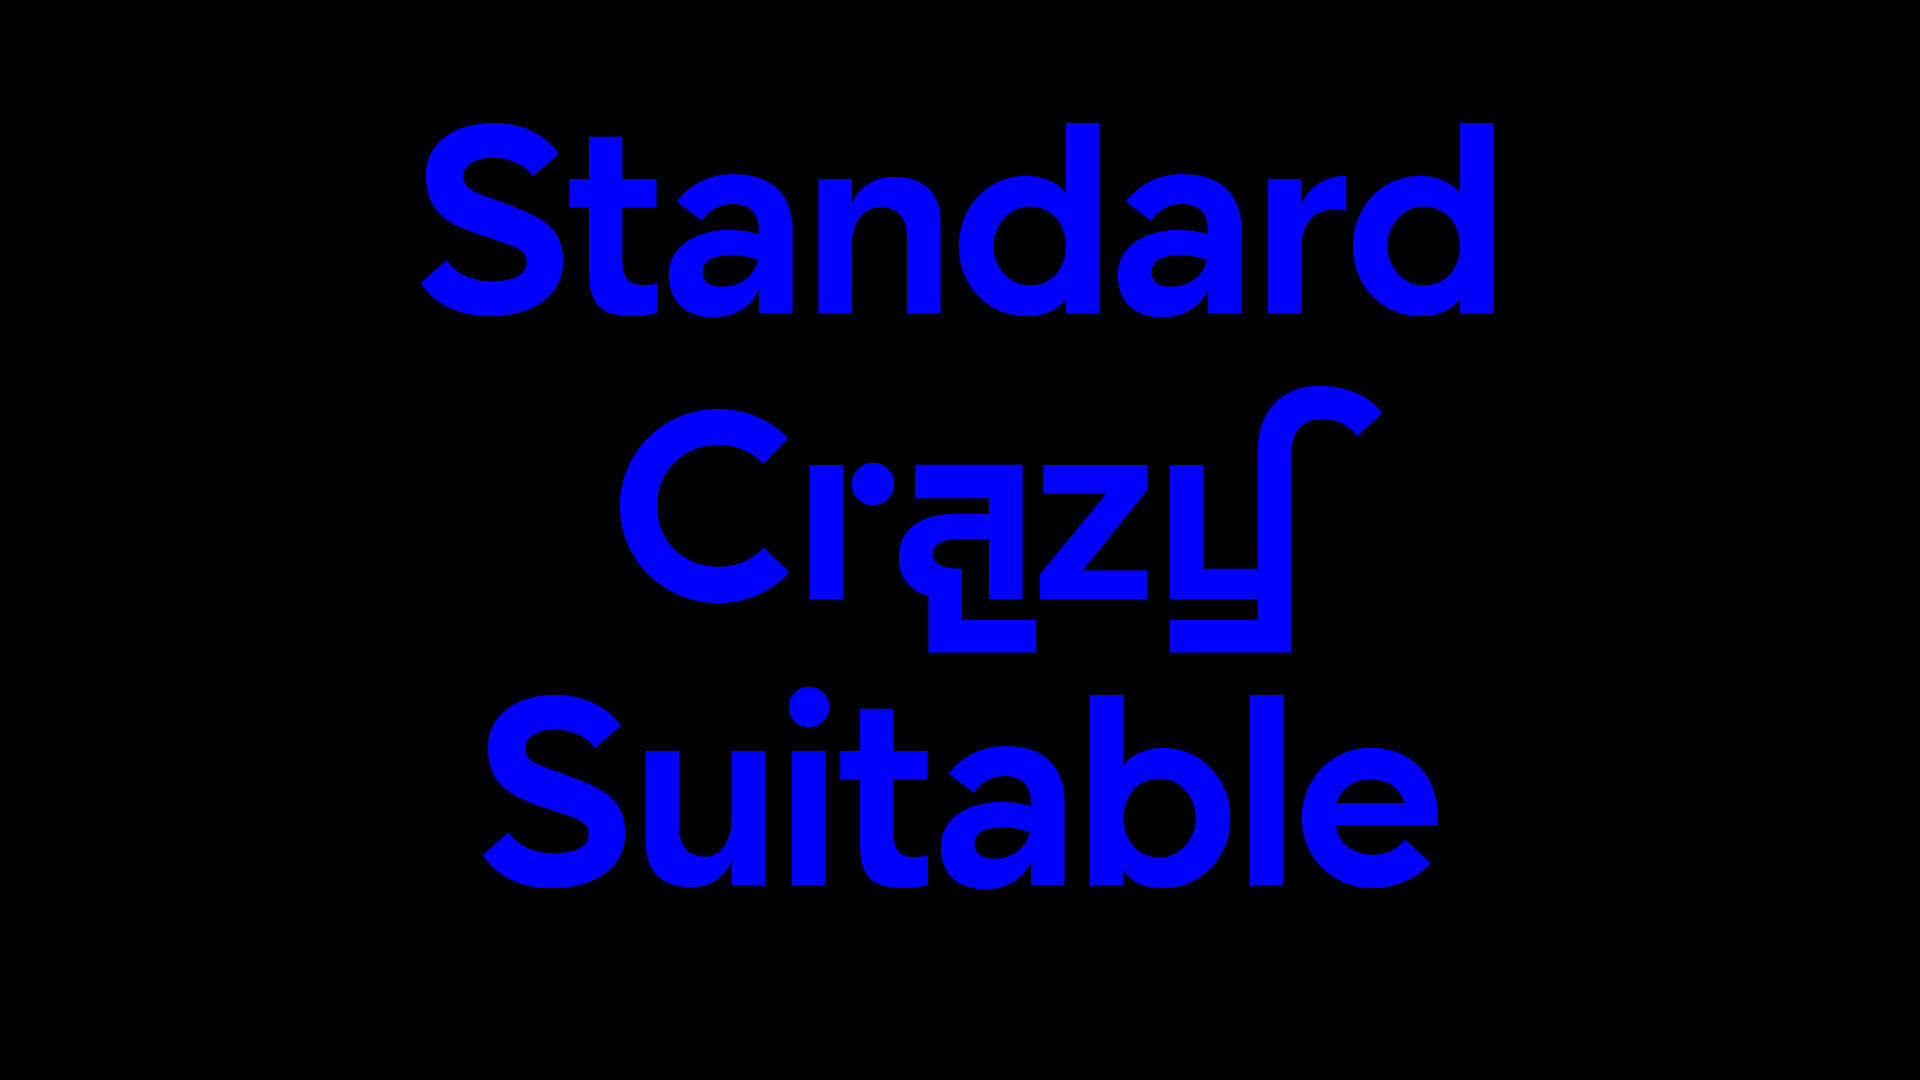 带有力量感的几何无衬线字体 Rigid Geometric Sans Serif Font插图2